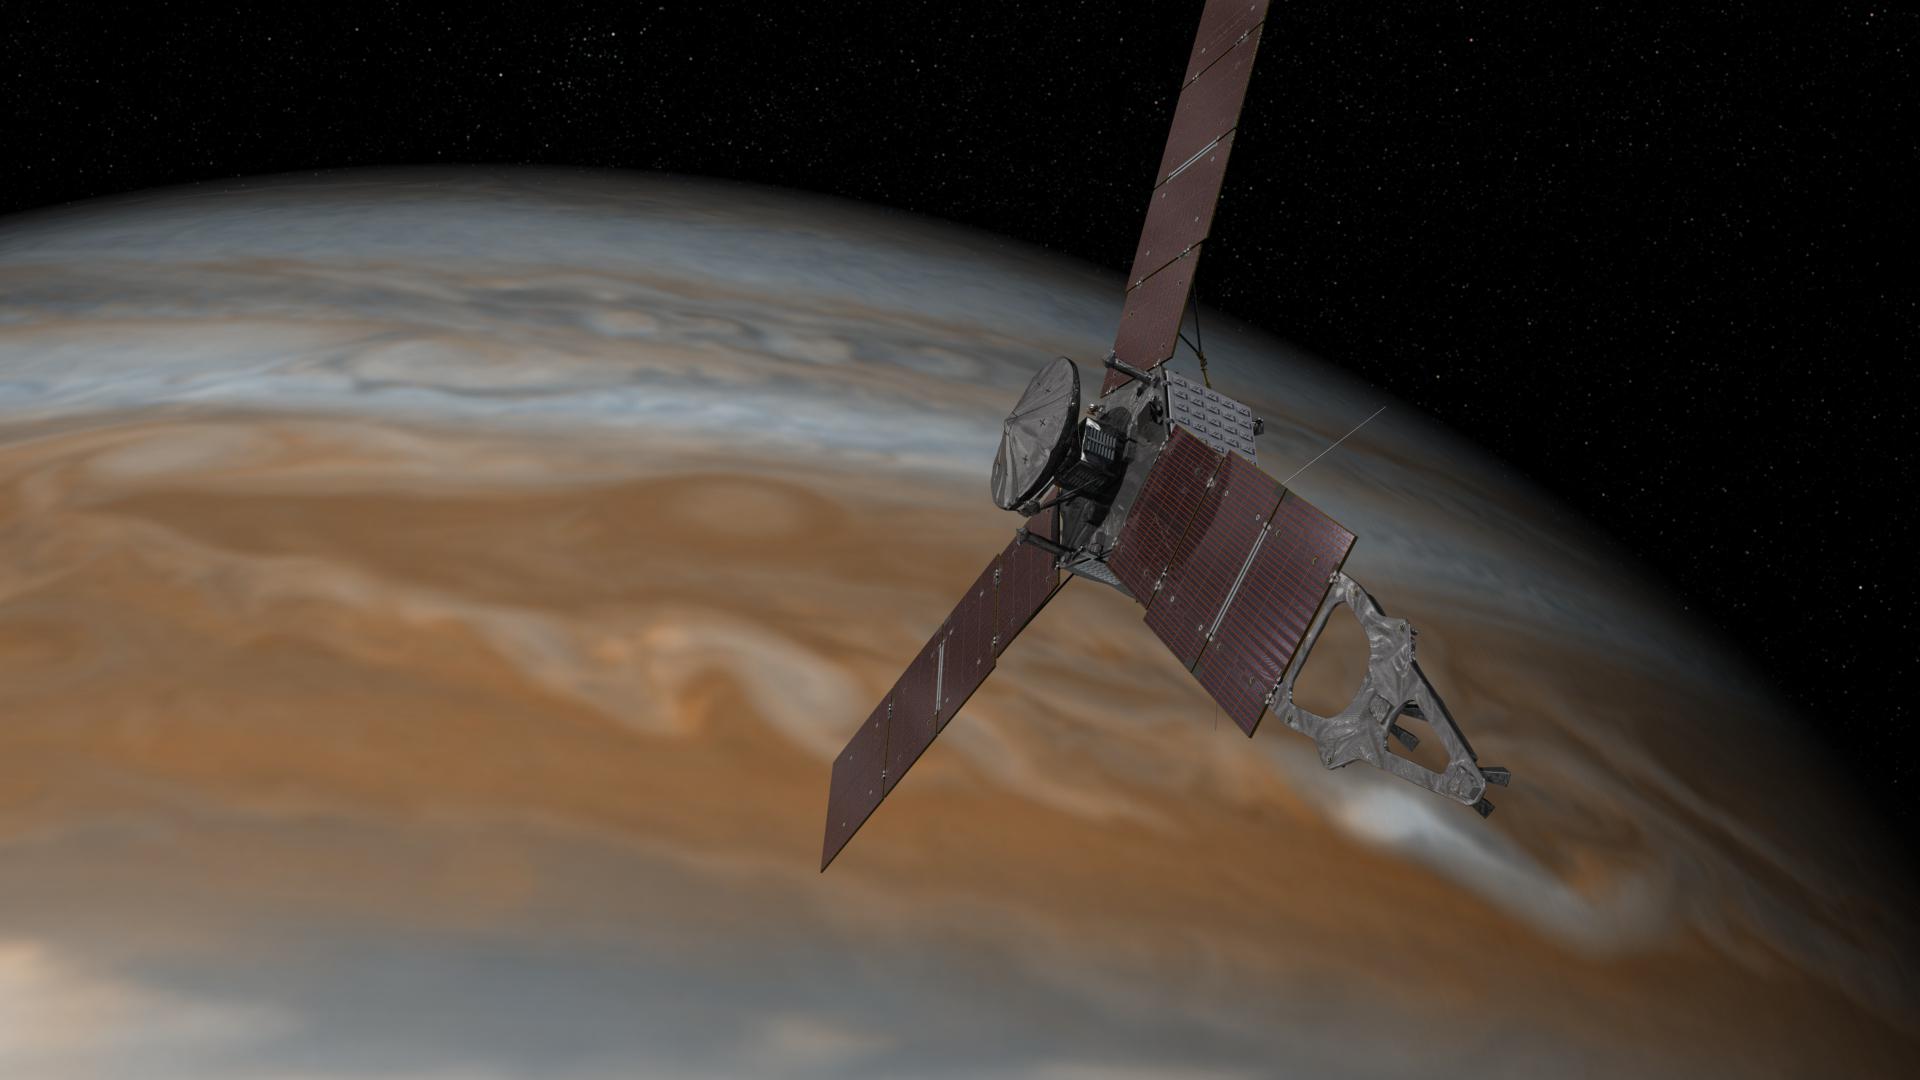 Vue d’artiste de Juno dans la banlieue de Jupiter. Après cinq années de voyage, la sonde devrait s’insérer en orbite autour de la géante gazeuse, le 4 juillet prochain. © Nasa, JPL-Caltech